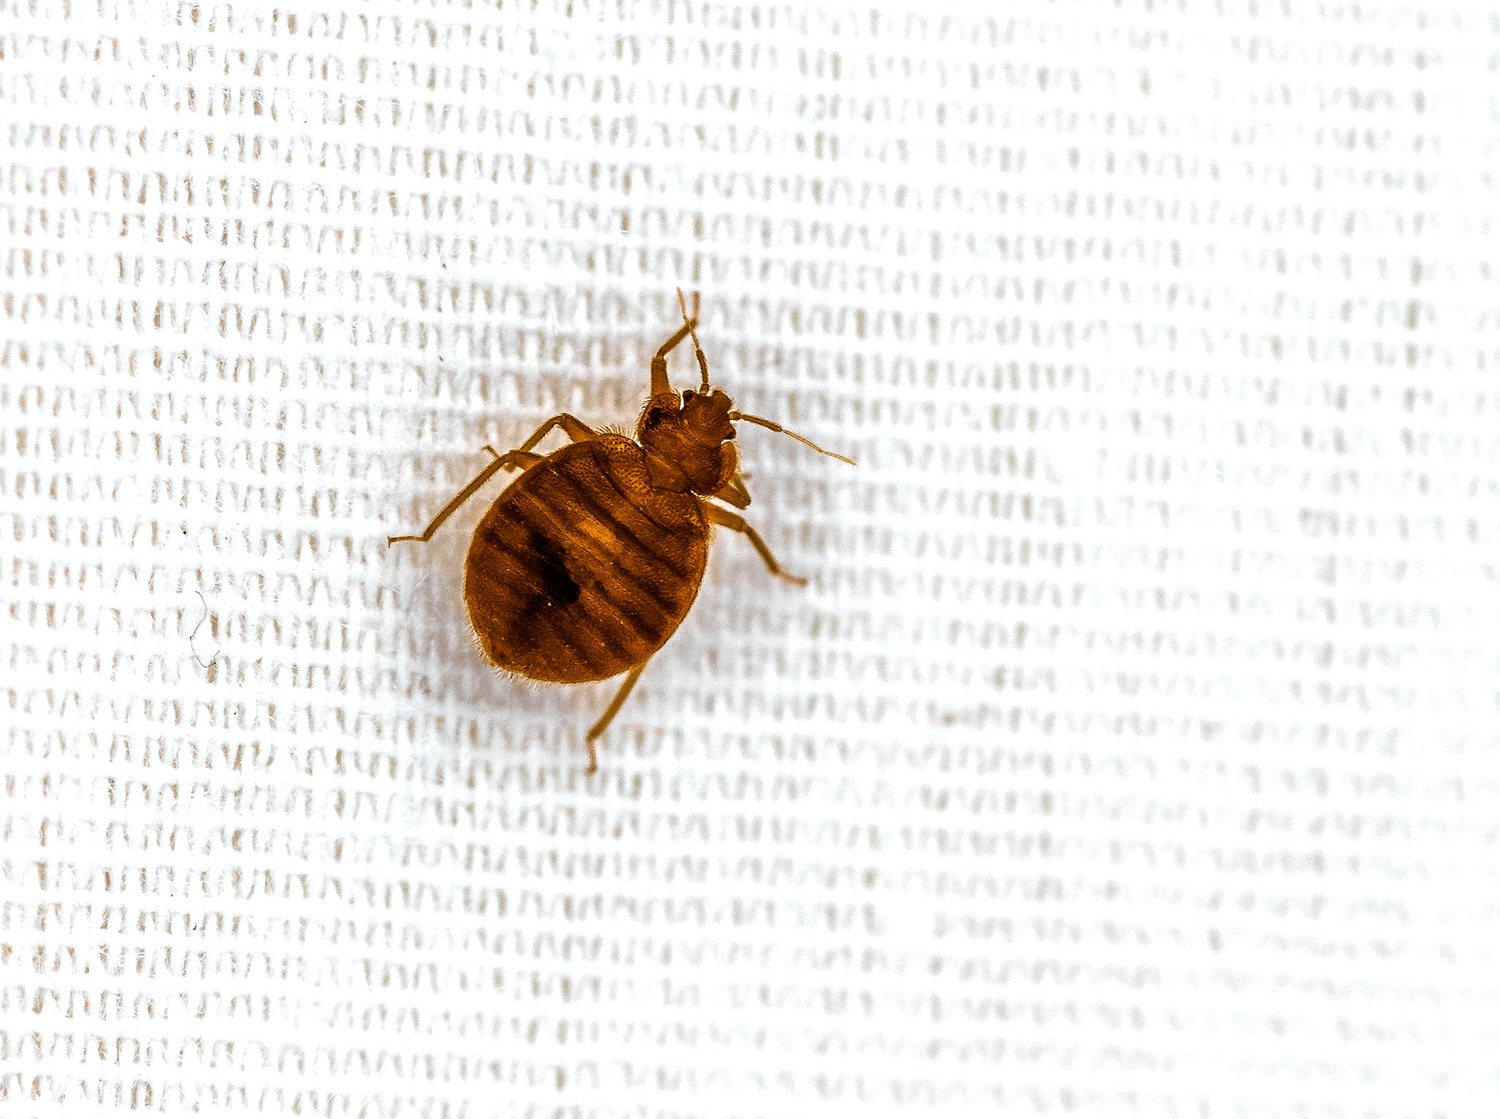 Piege A Punaise De Lit, Anti Insectes Maison. Barriere Bed Bug